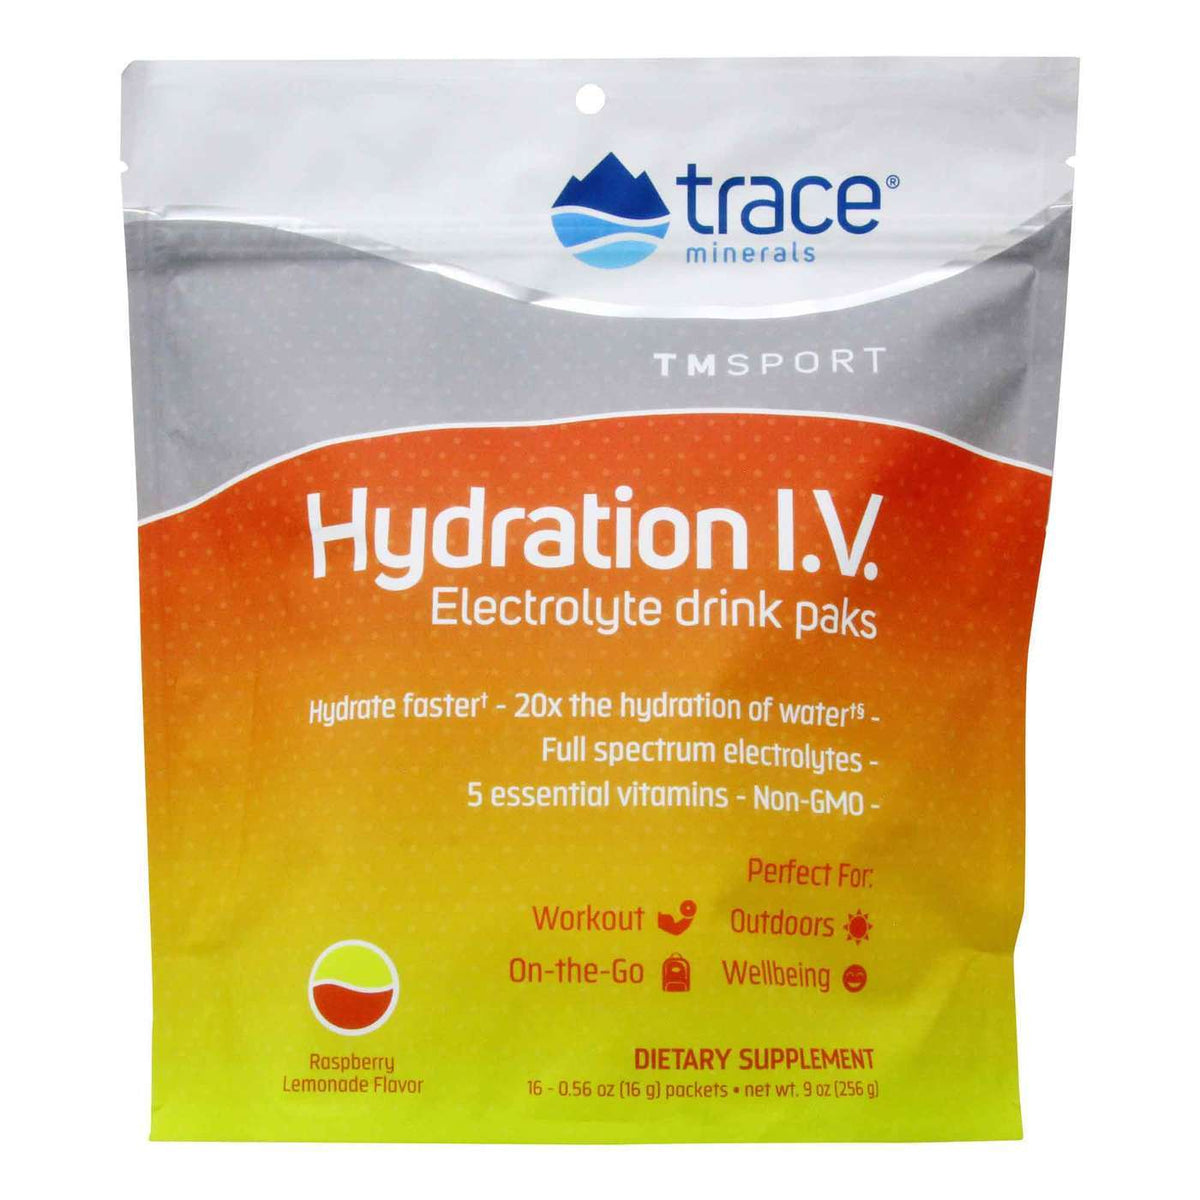 Hydration I.V. Electrolyte drink paks (256g)